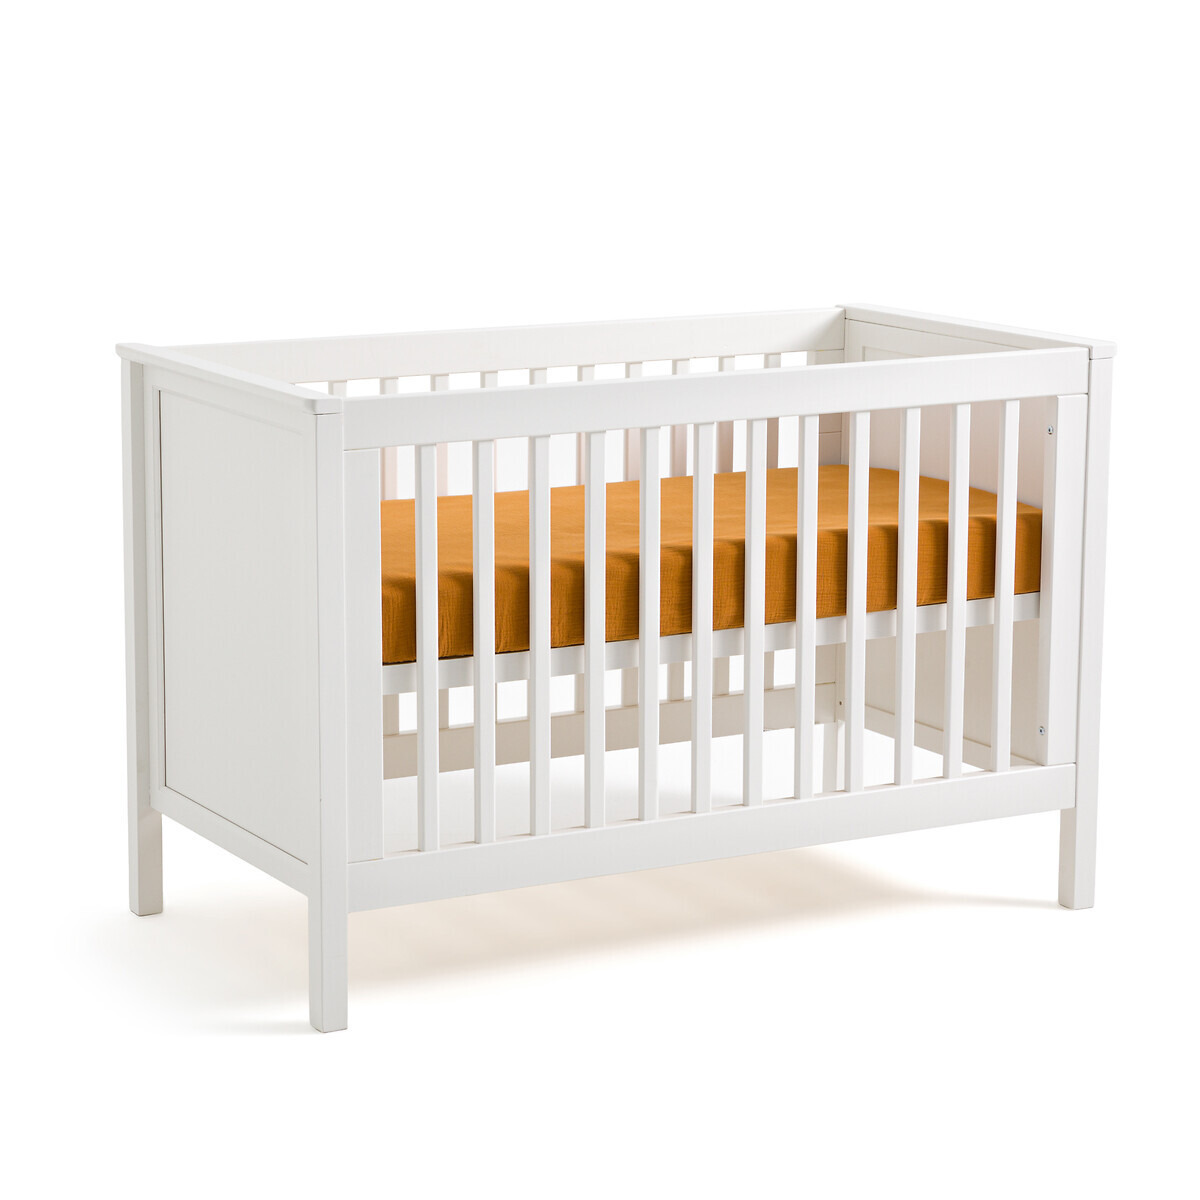 Teddington Crib with Bars and Adjustable Base - image 1